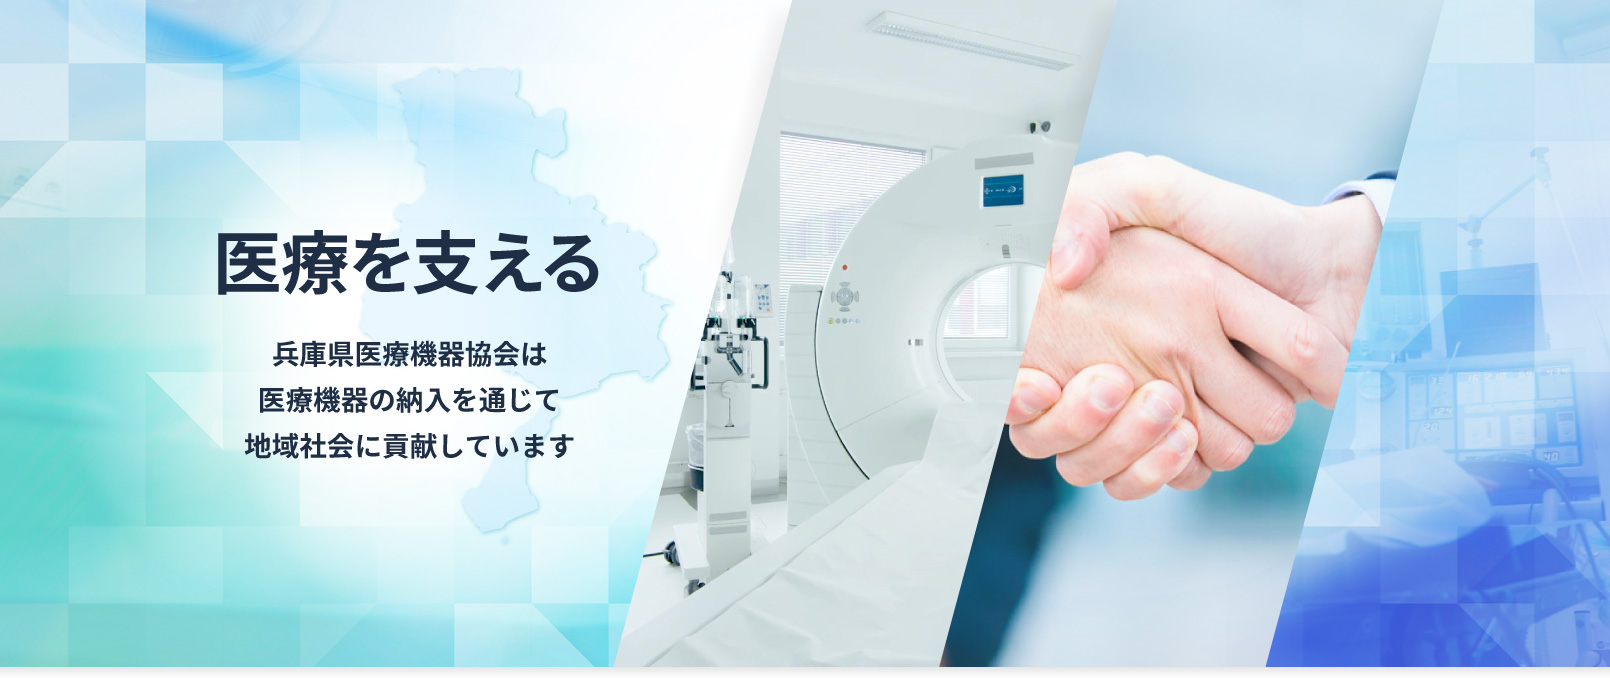 医療をささえる。兵庫県医療機器協会は医療機器の納入を通じて地域社会に貢献しています。